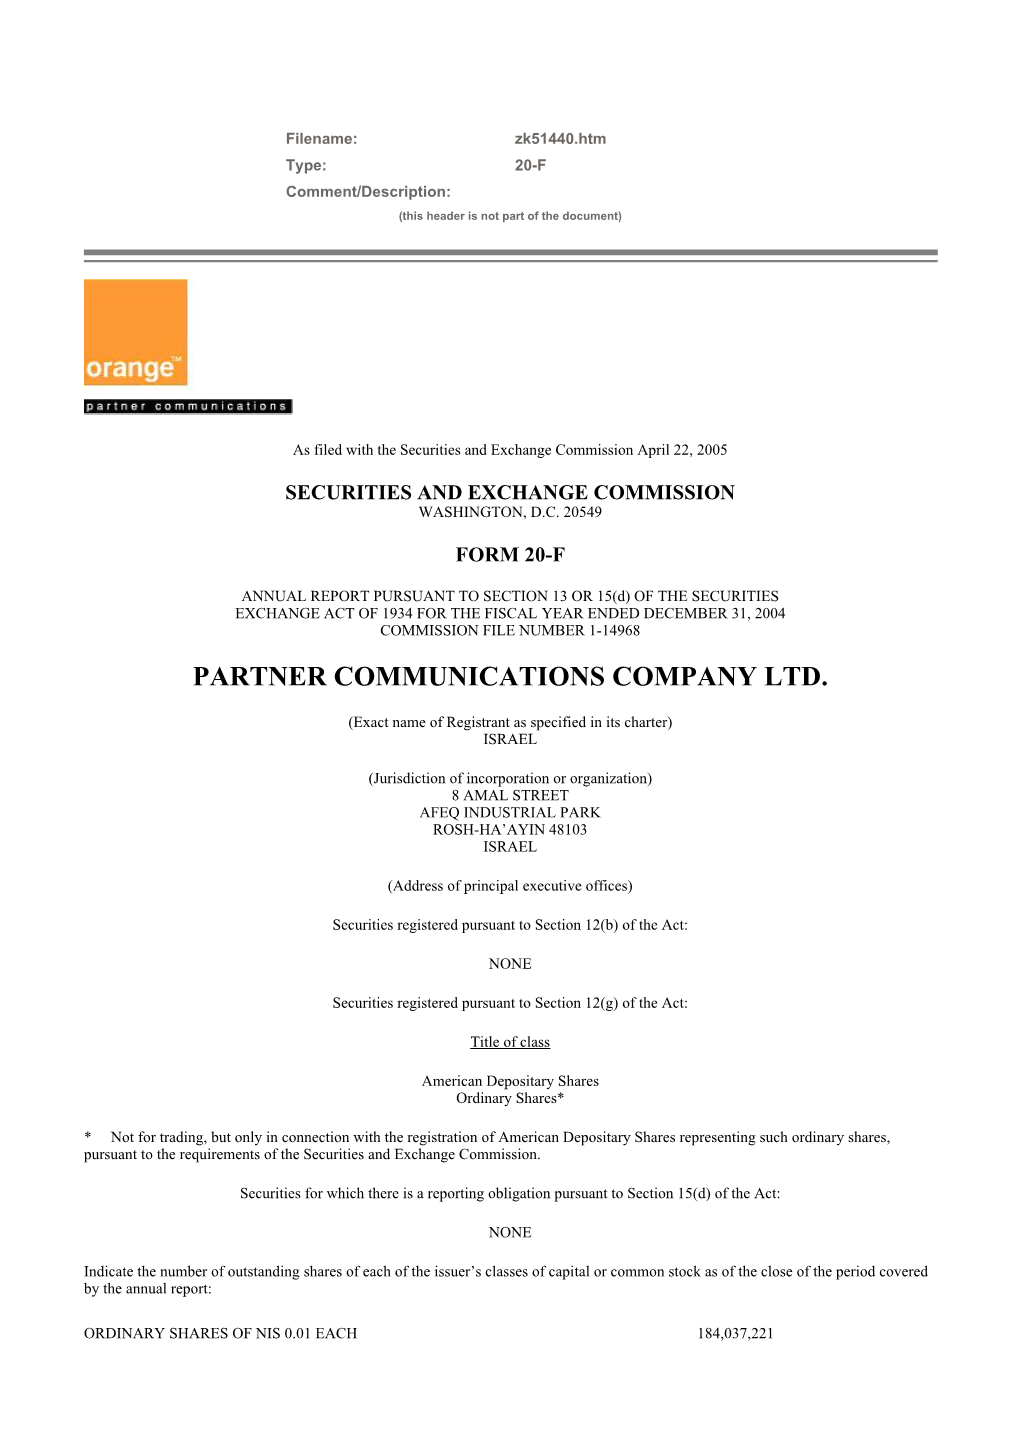 Partner Communications Company Ltd